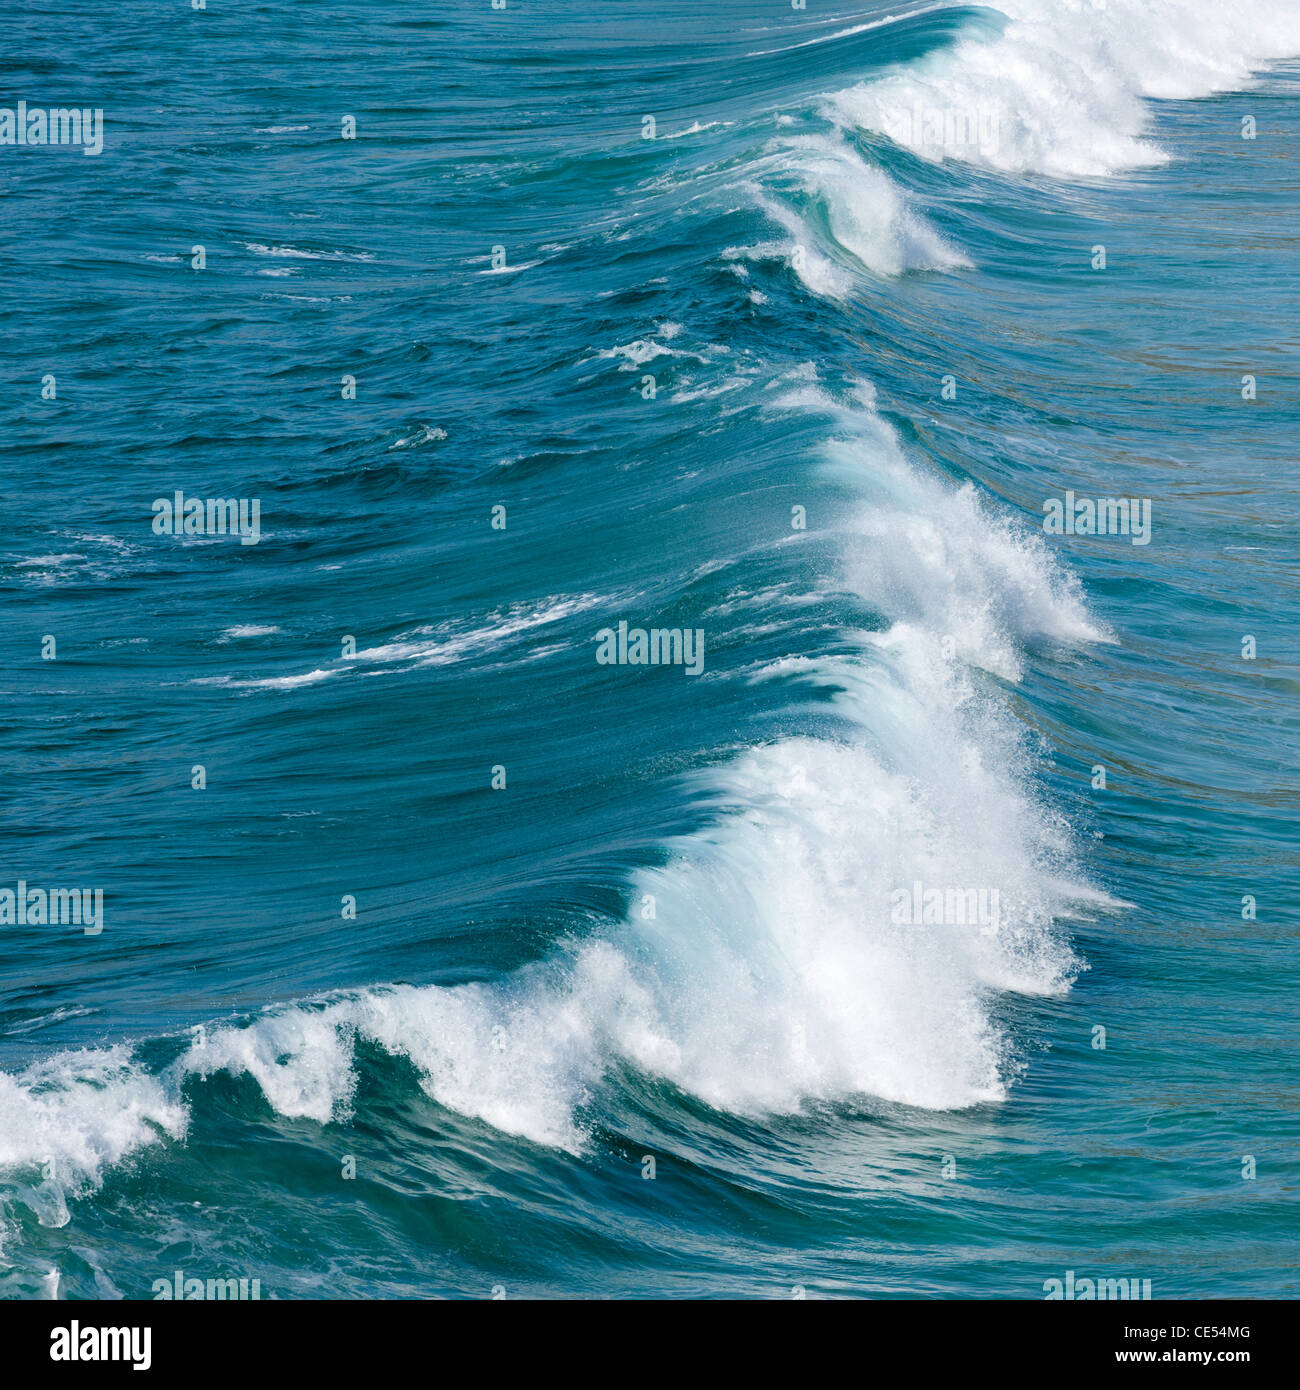 La rupture de l'onde de l'Atlantique au large des côtes ouest de la Cornouailles Banque D'Images